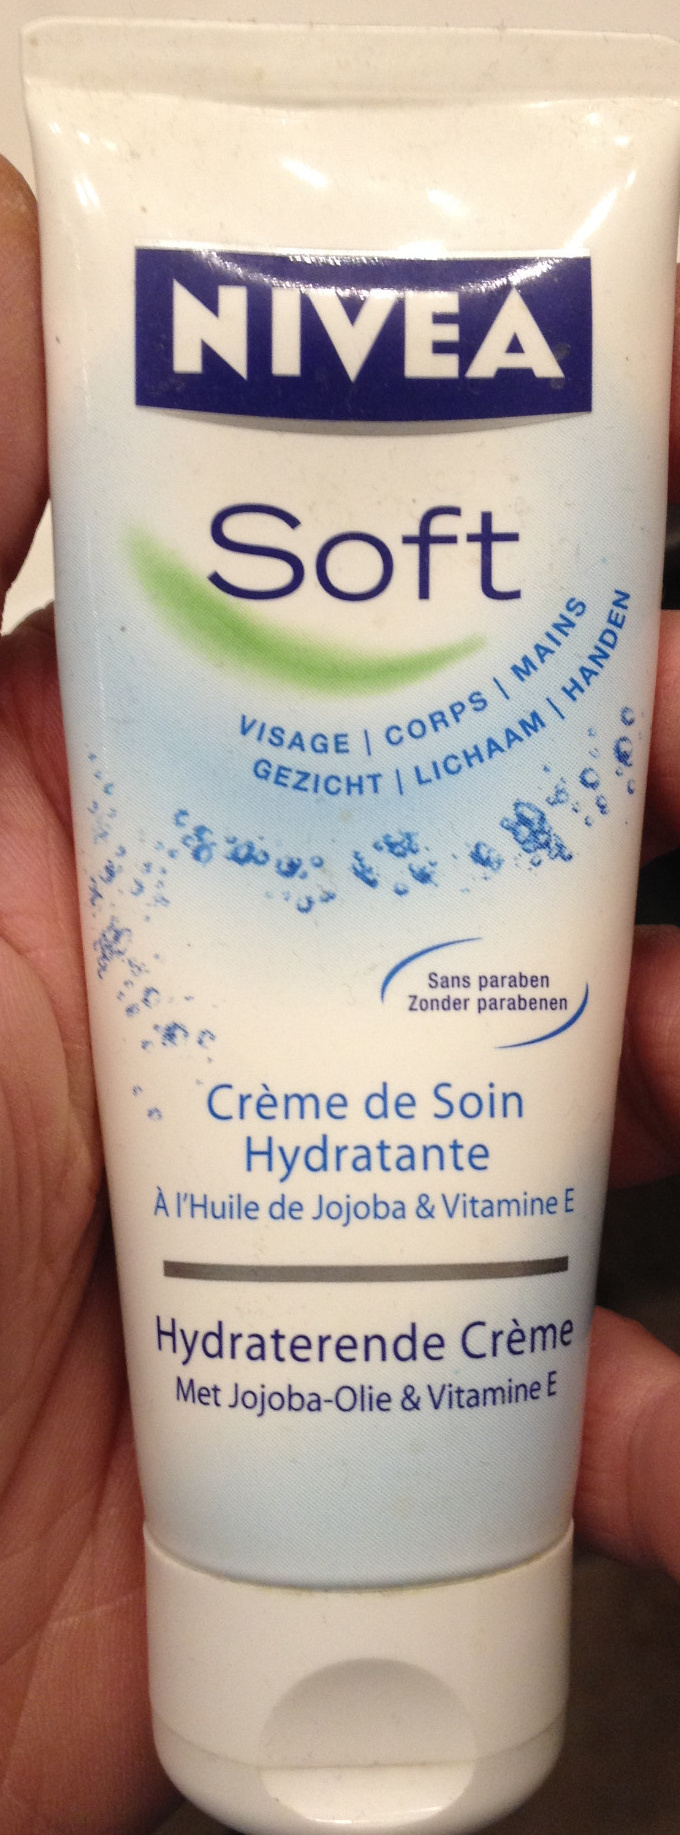 Soft Crème de soin hydratante - Produit - fr